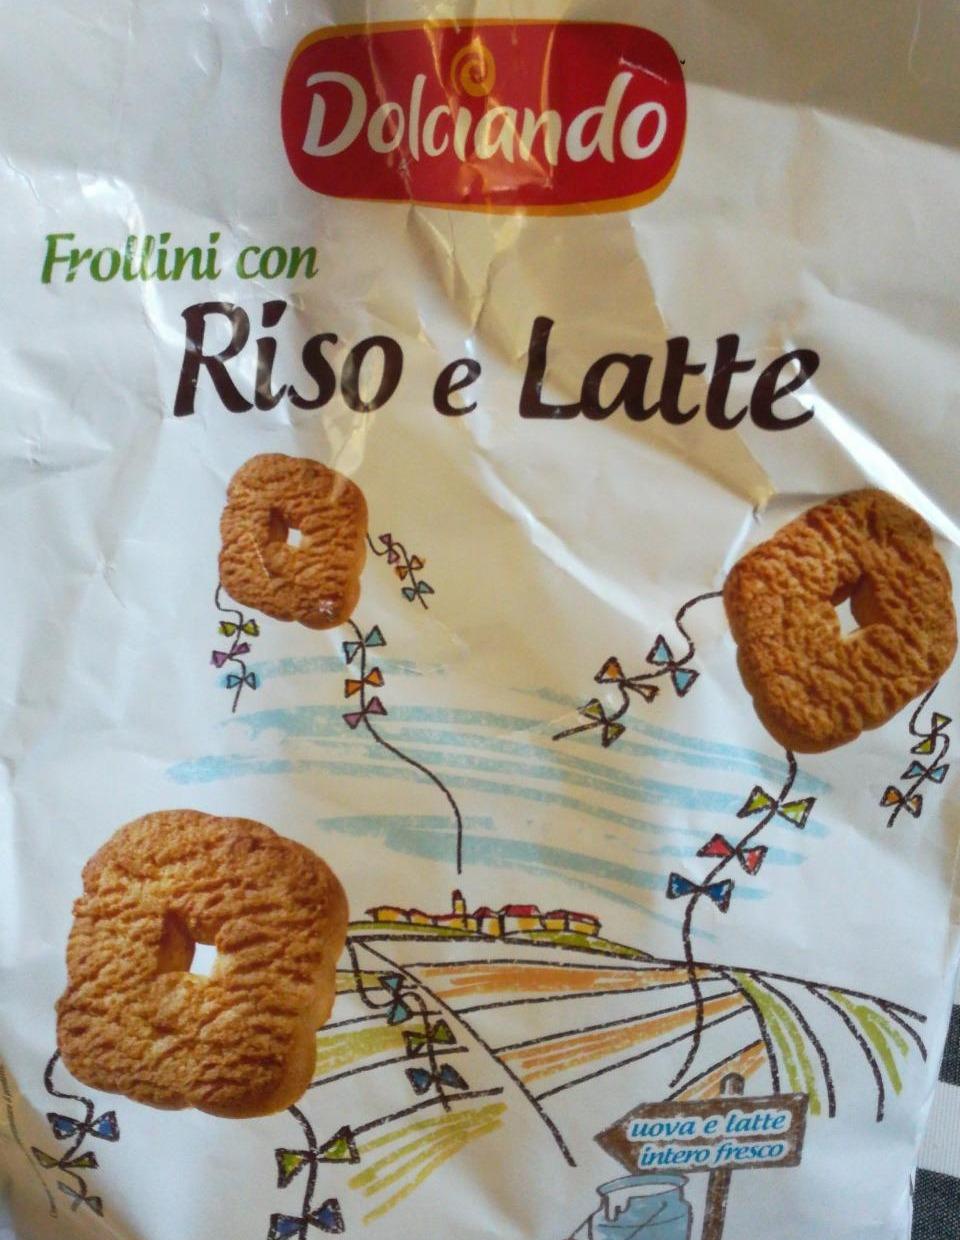 Фото - Печиво пісочне Frollini Con Riso E Latte Dolciando